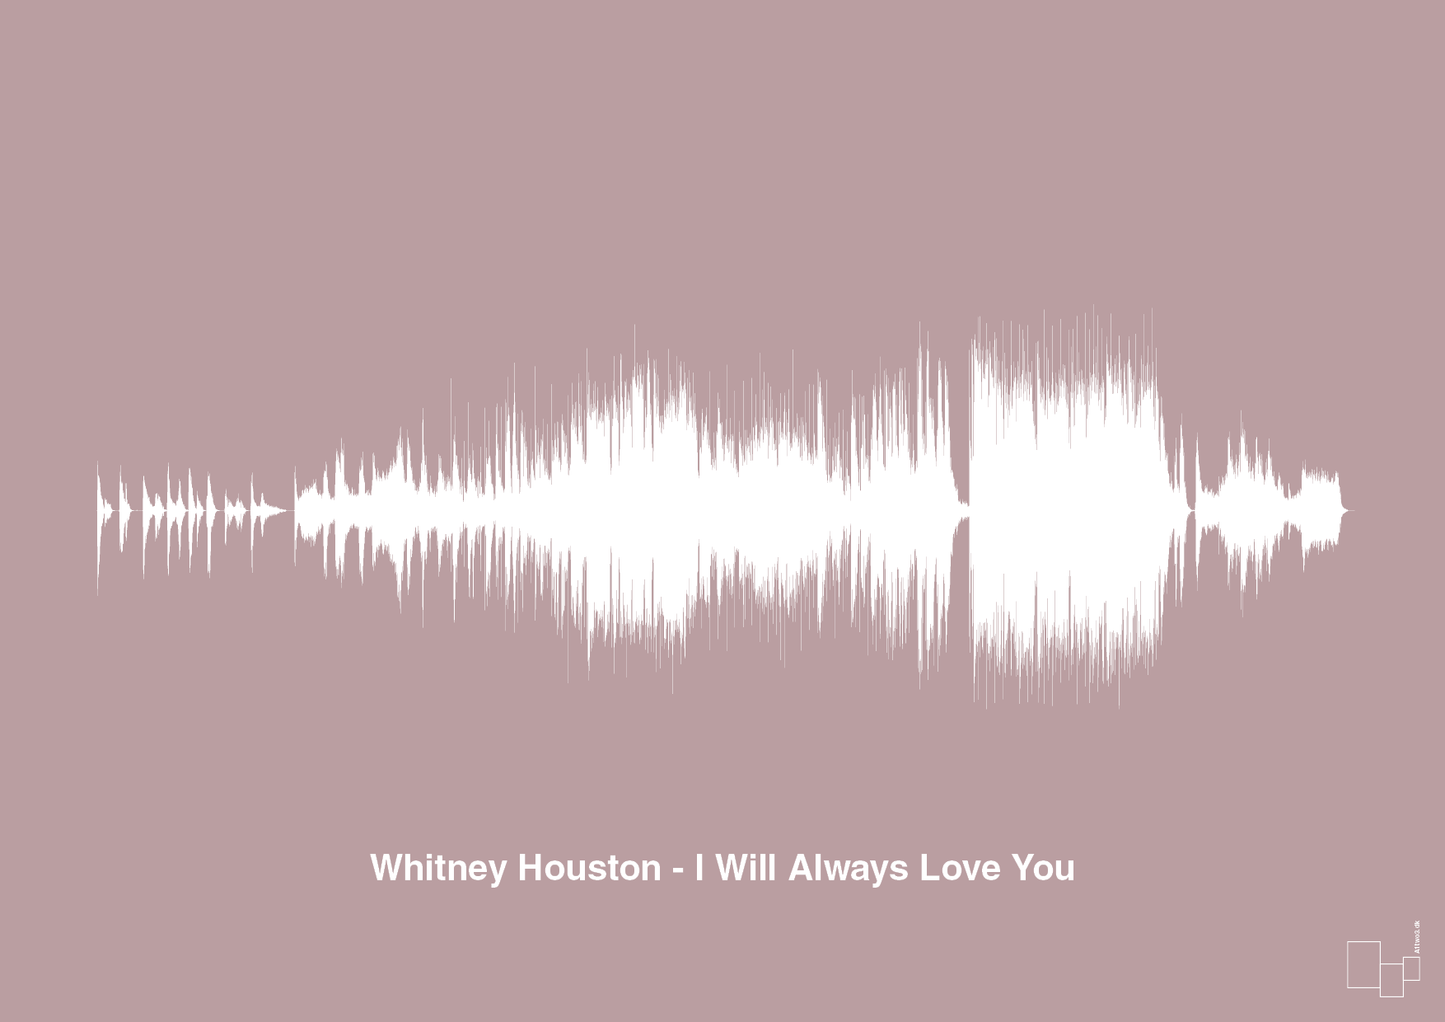 whitney houston - i will always love you - Plakat med Musik i Light Rose